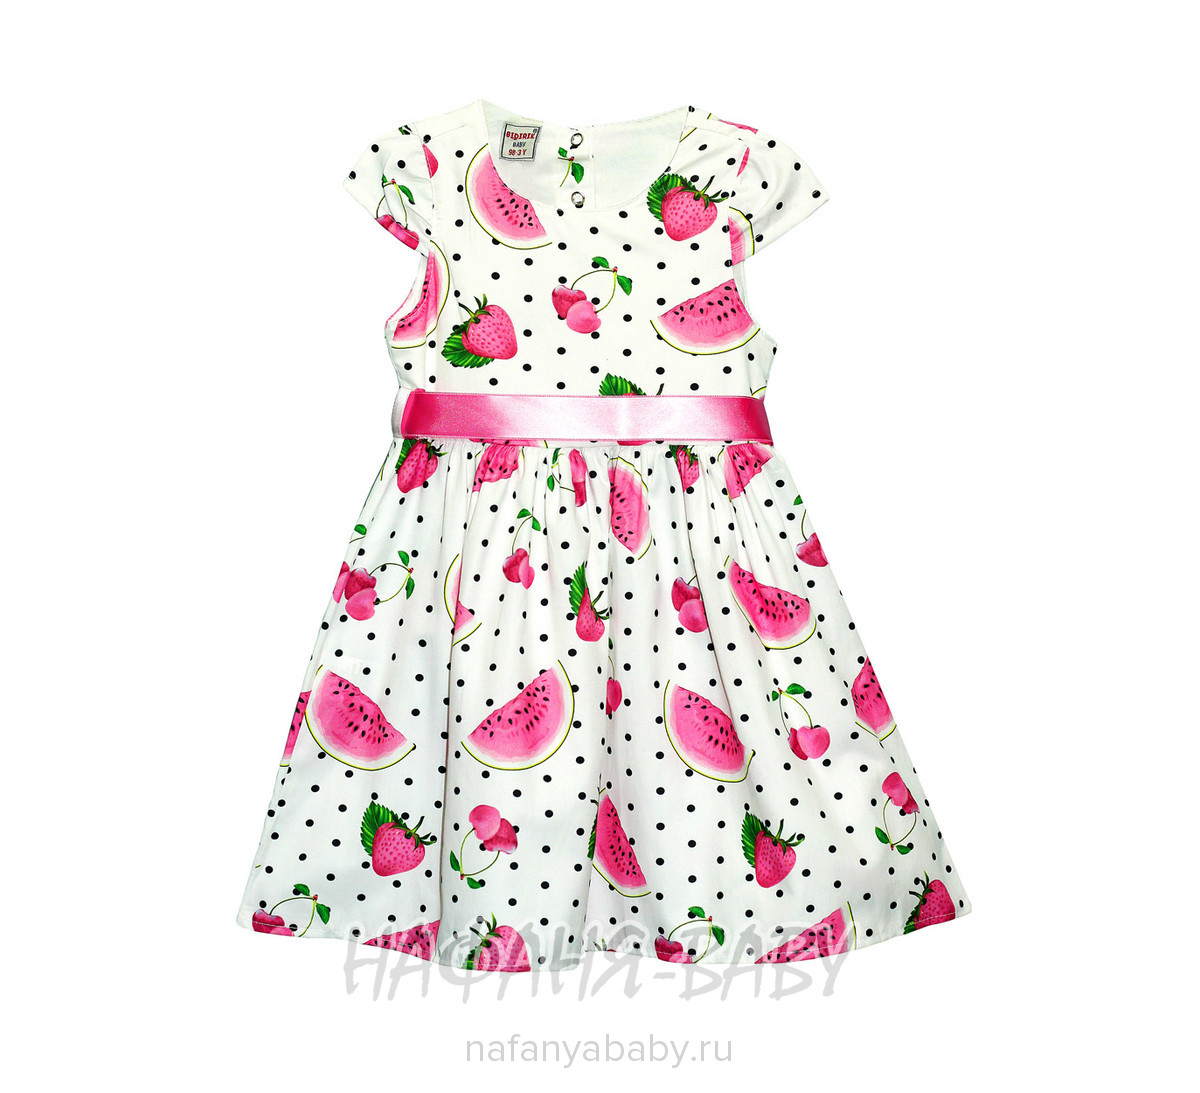 Детское платье BIDIRIK арт: 741, 1-4 года, 5-9 лет, цвет молочный с розовым, оптом Турция